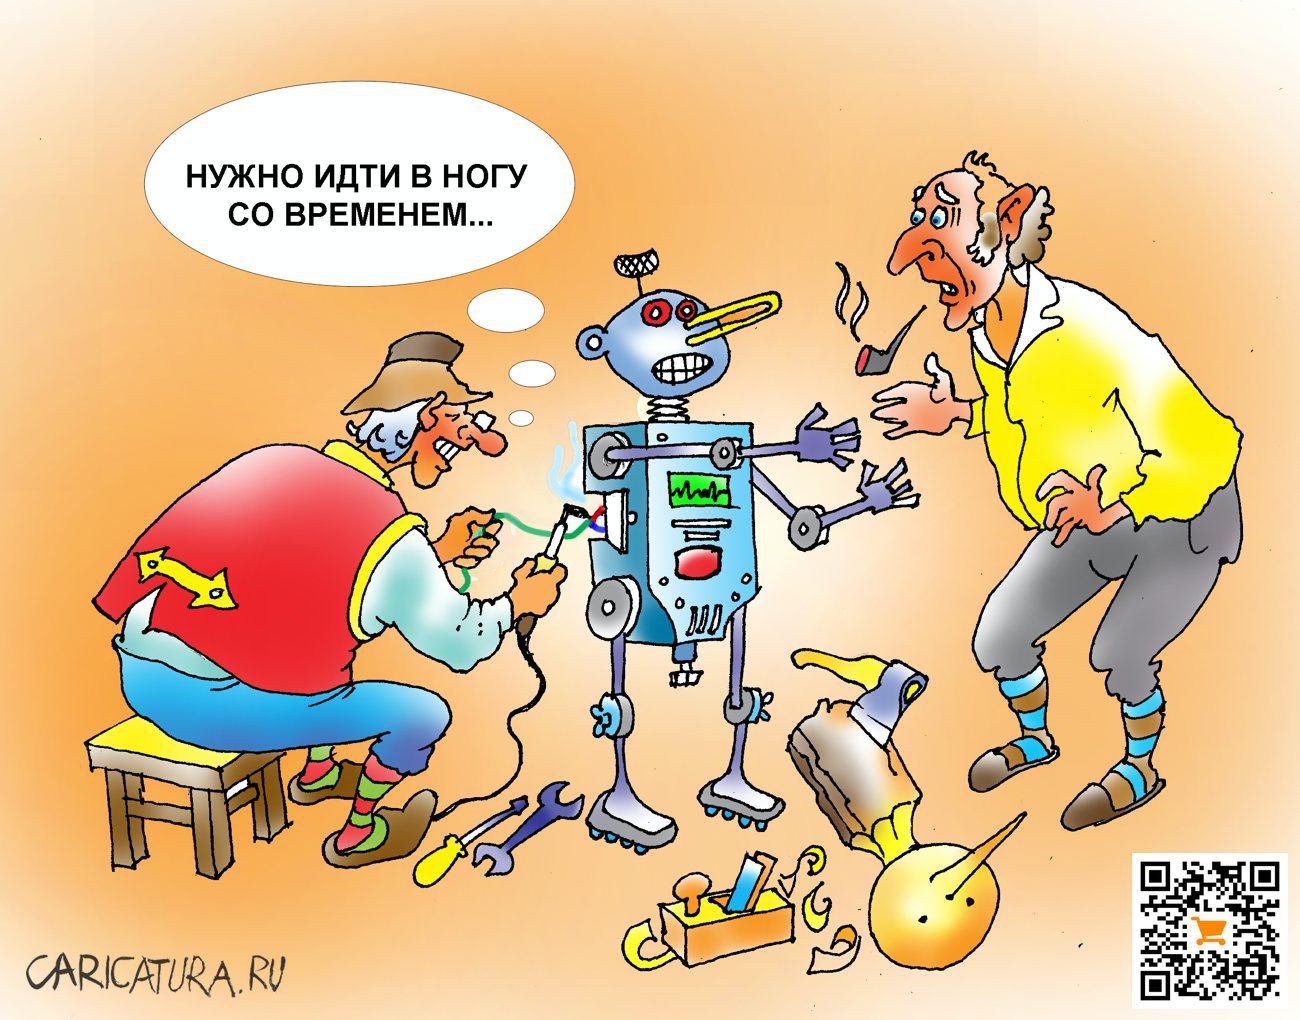 Карикатура "Нанобуратино", Александр Шульпинов